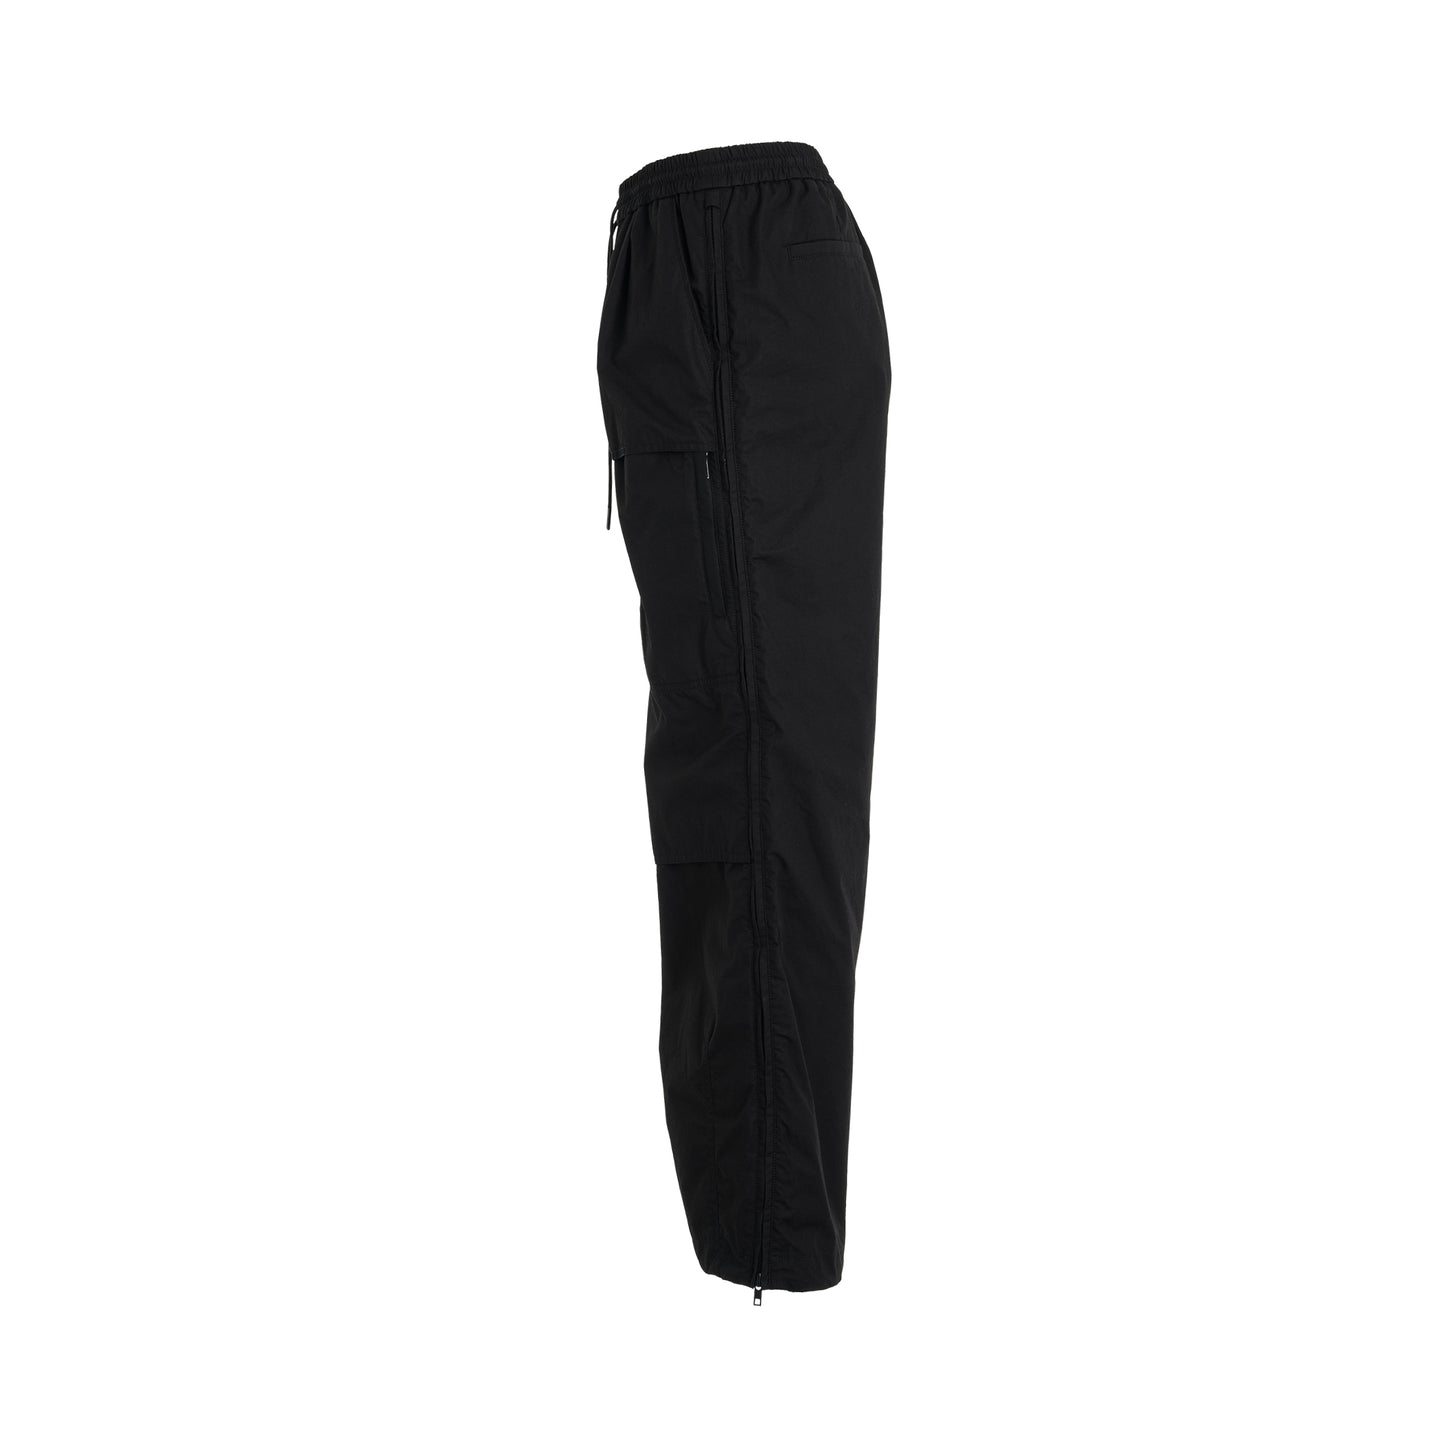 Cotton Side Zipper Pants in Black